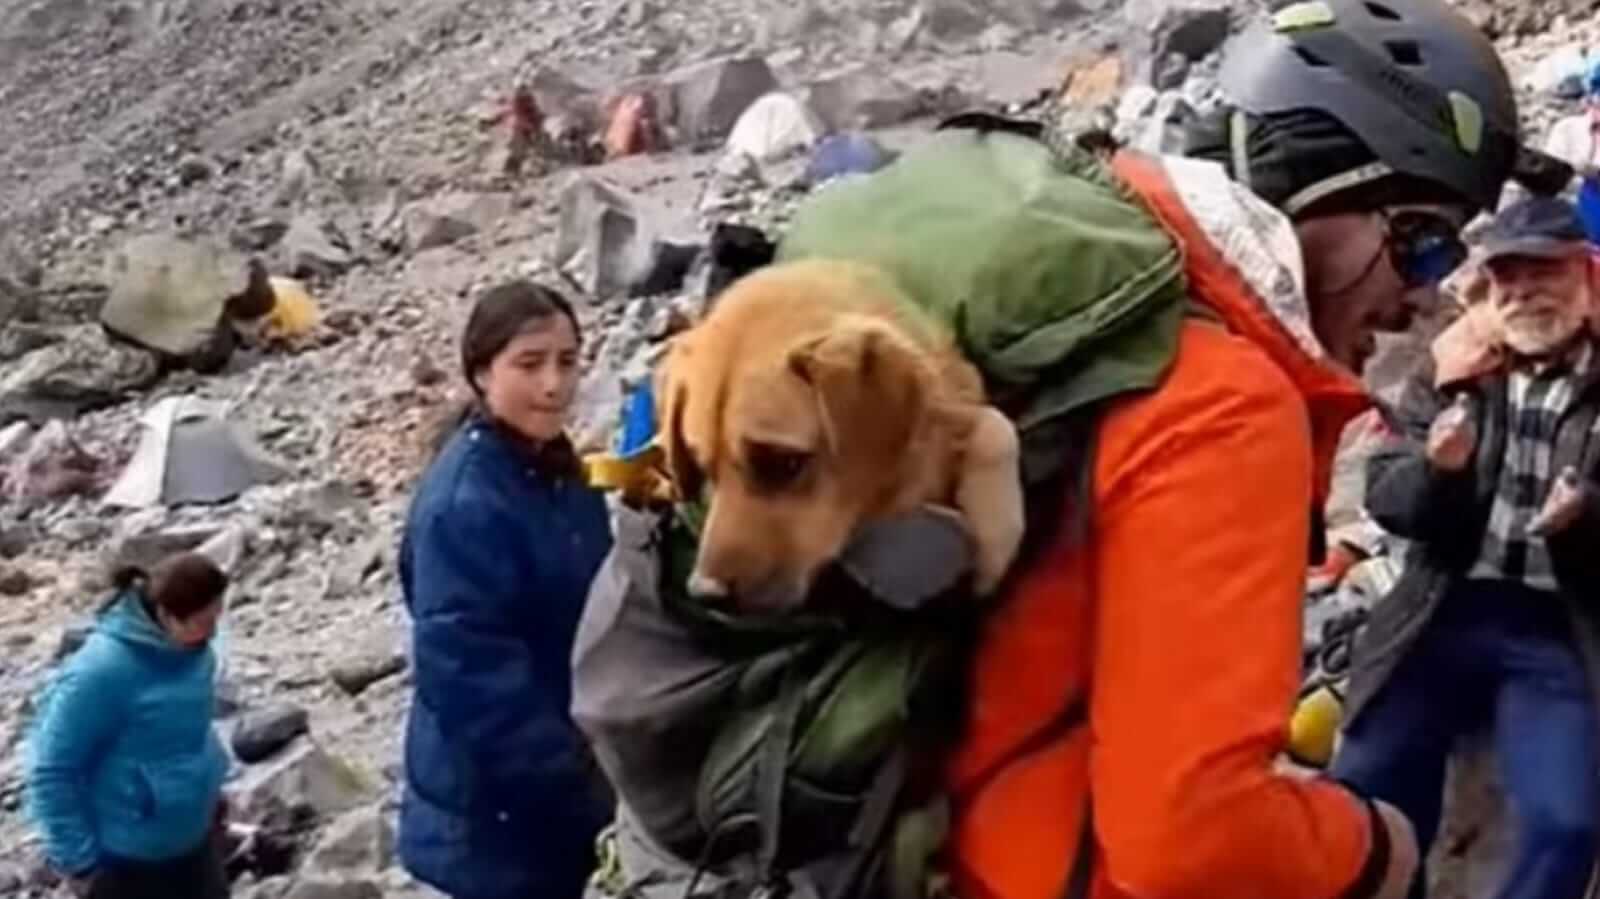 Alpinistas em montanha carregando cachorro